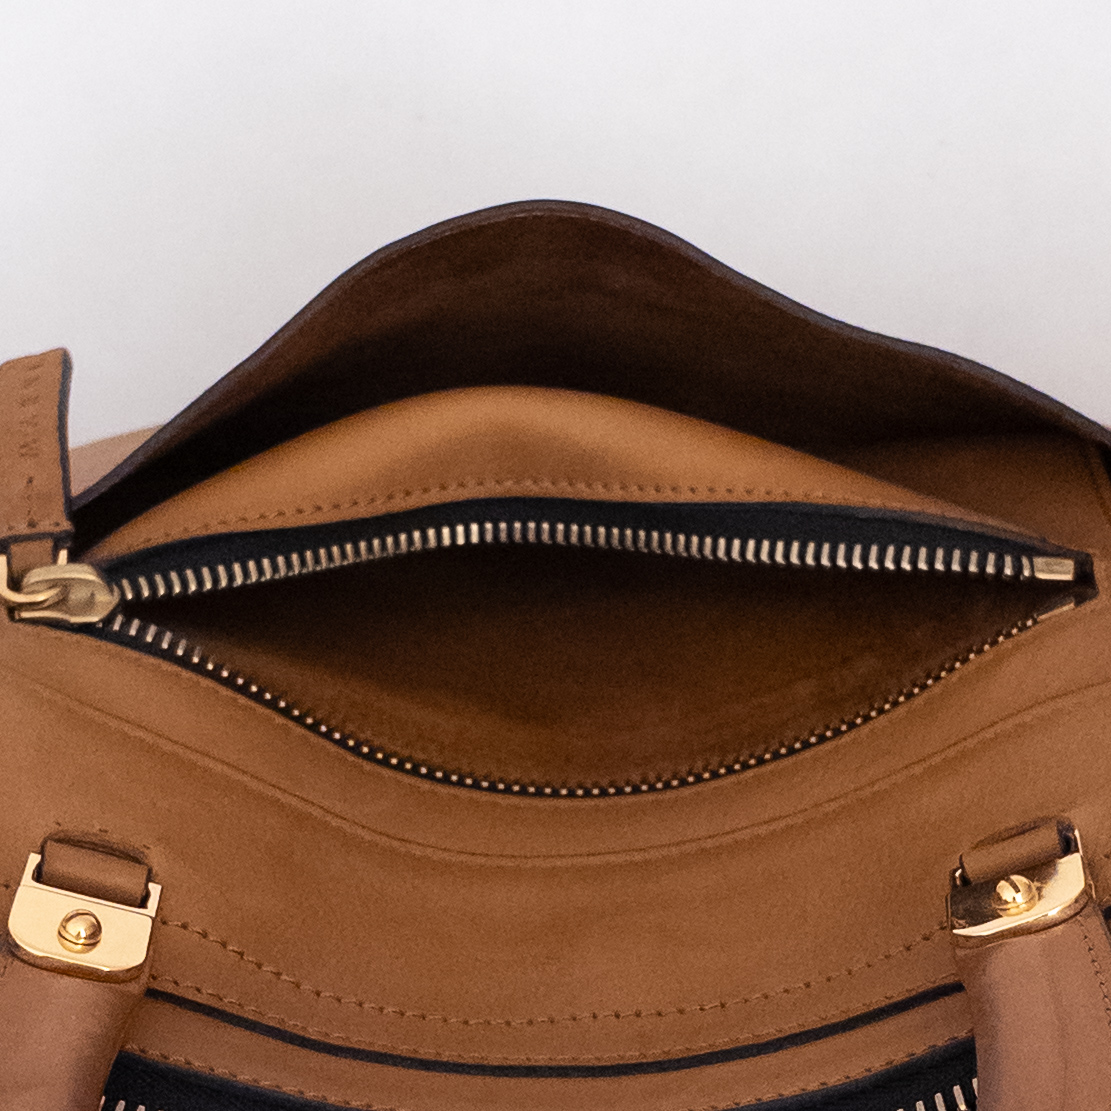 Marni Leather Handbag